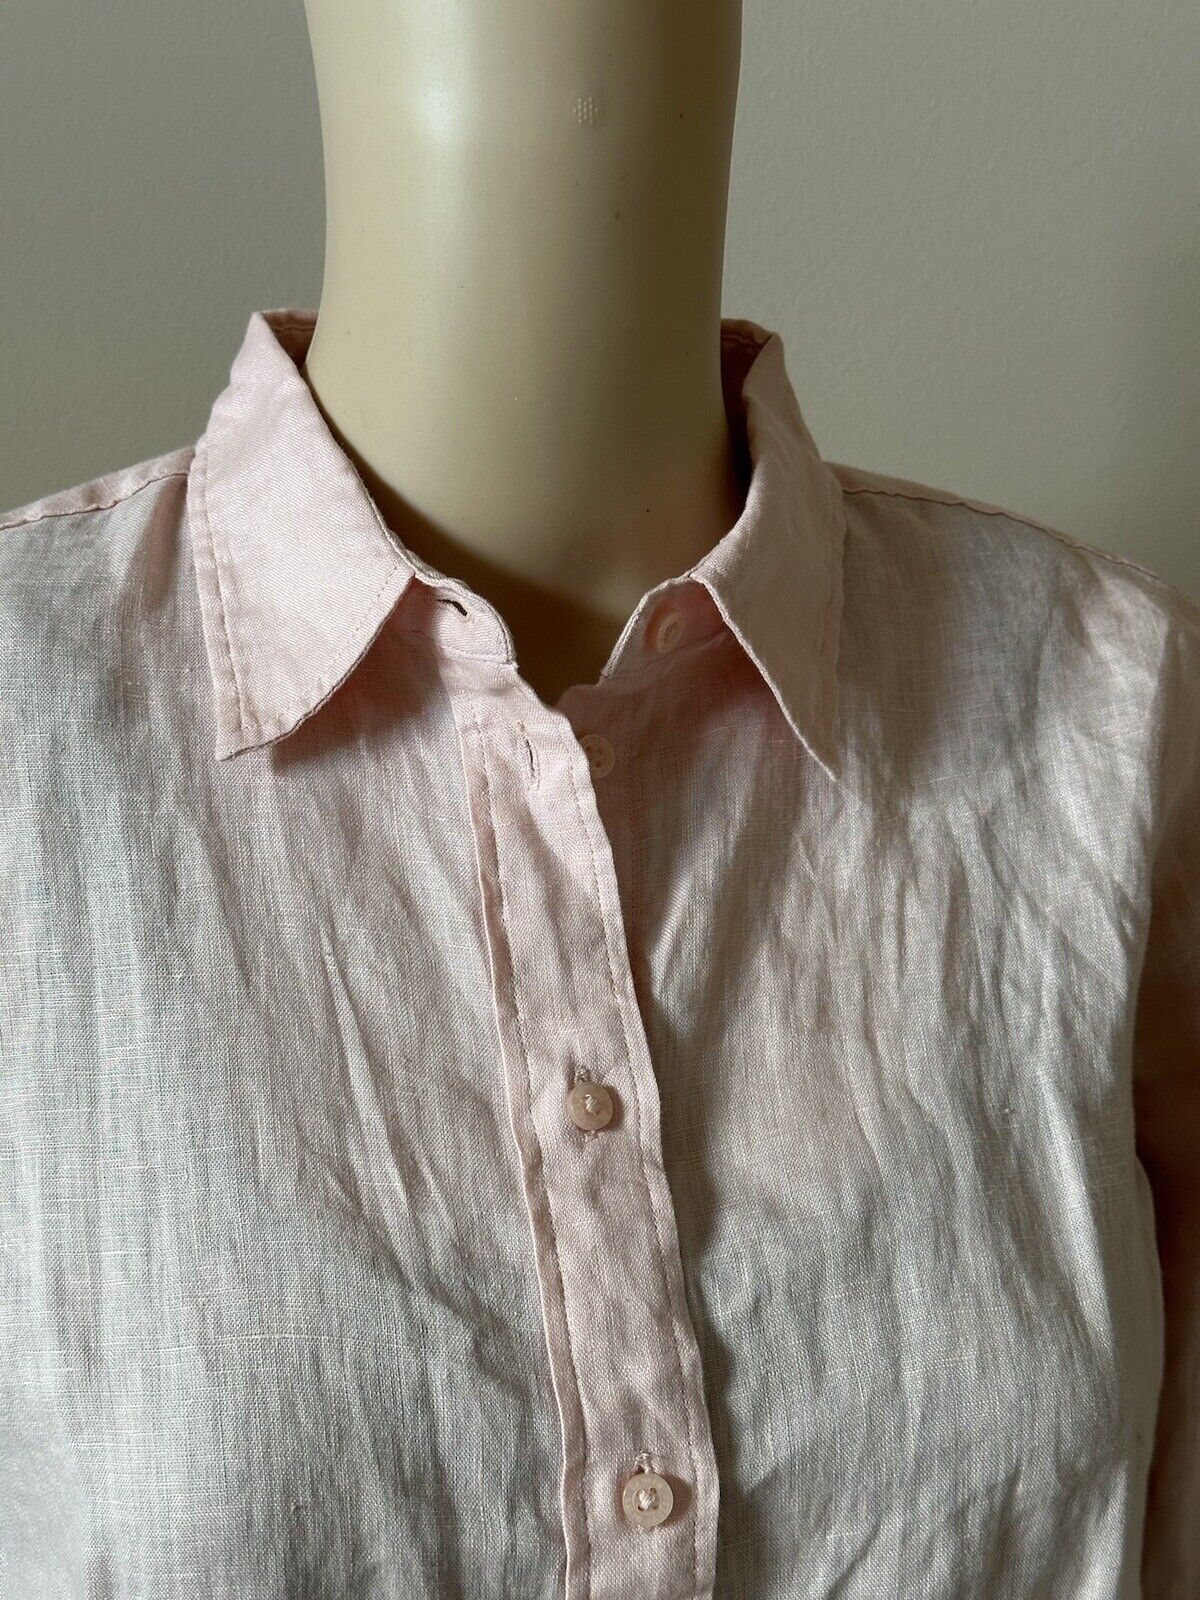 NWT $115 Lauren Ralph Lauren Women’s Linen Long Sleeve Shirt Pale Pink XL